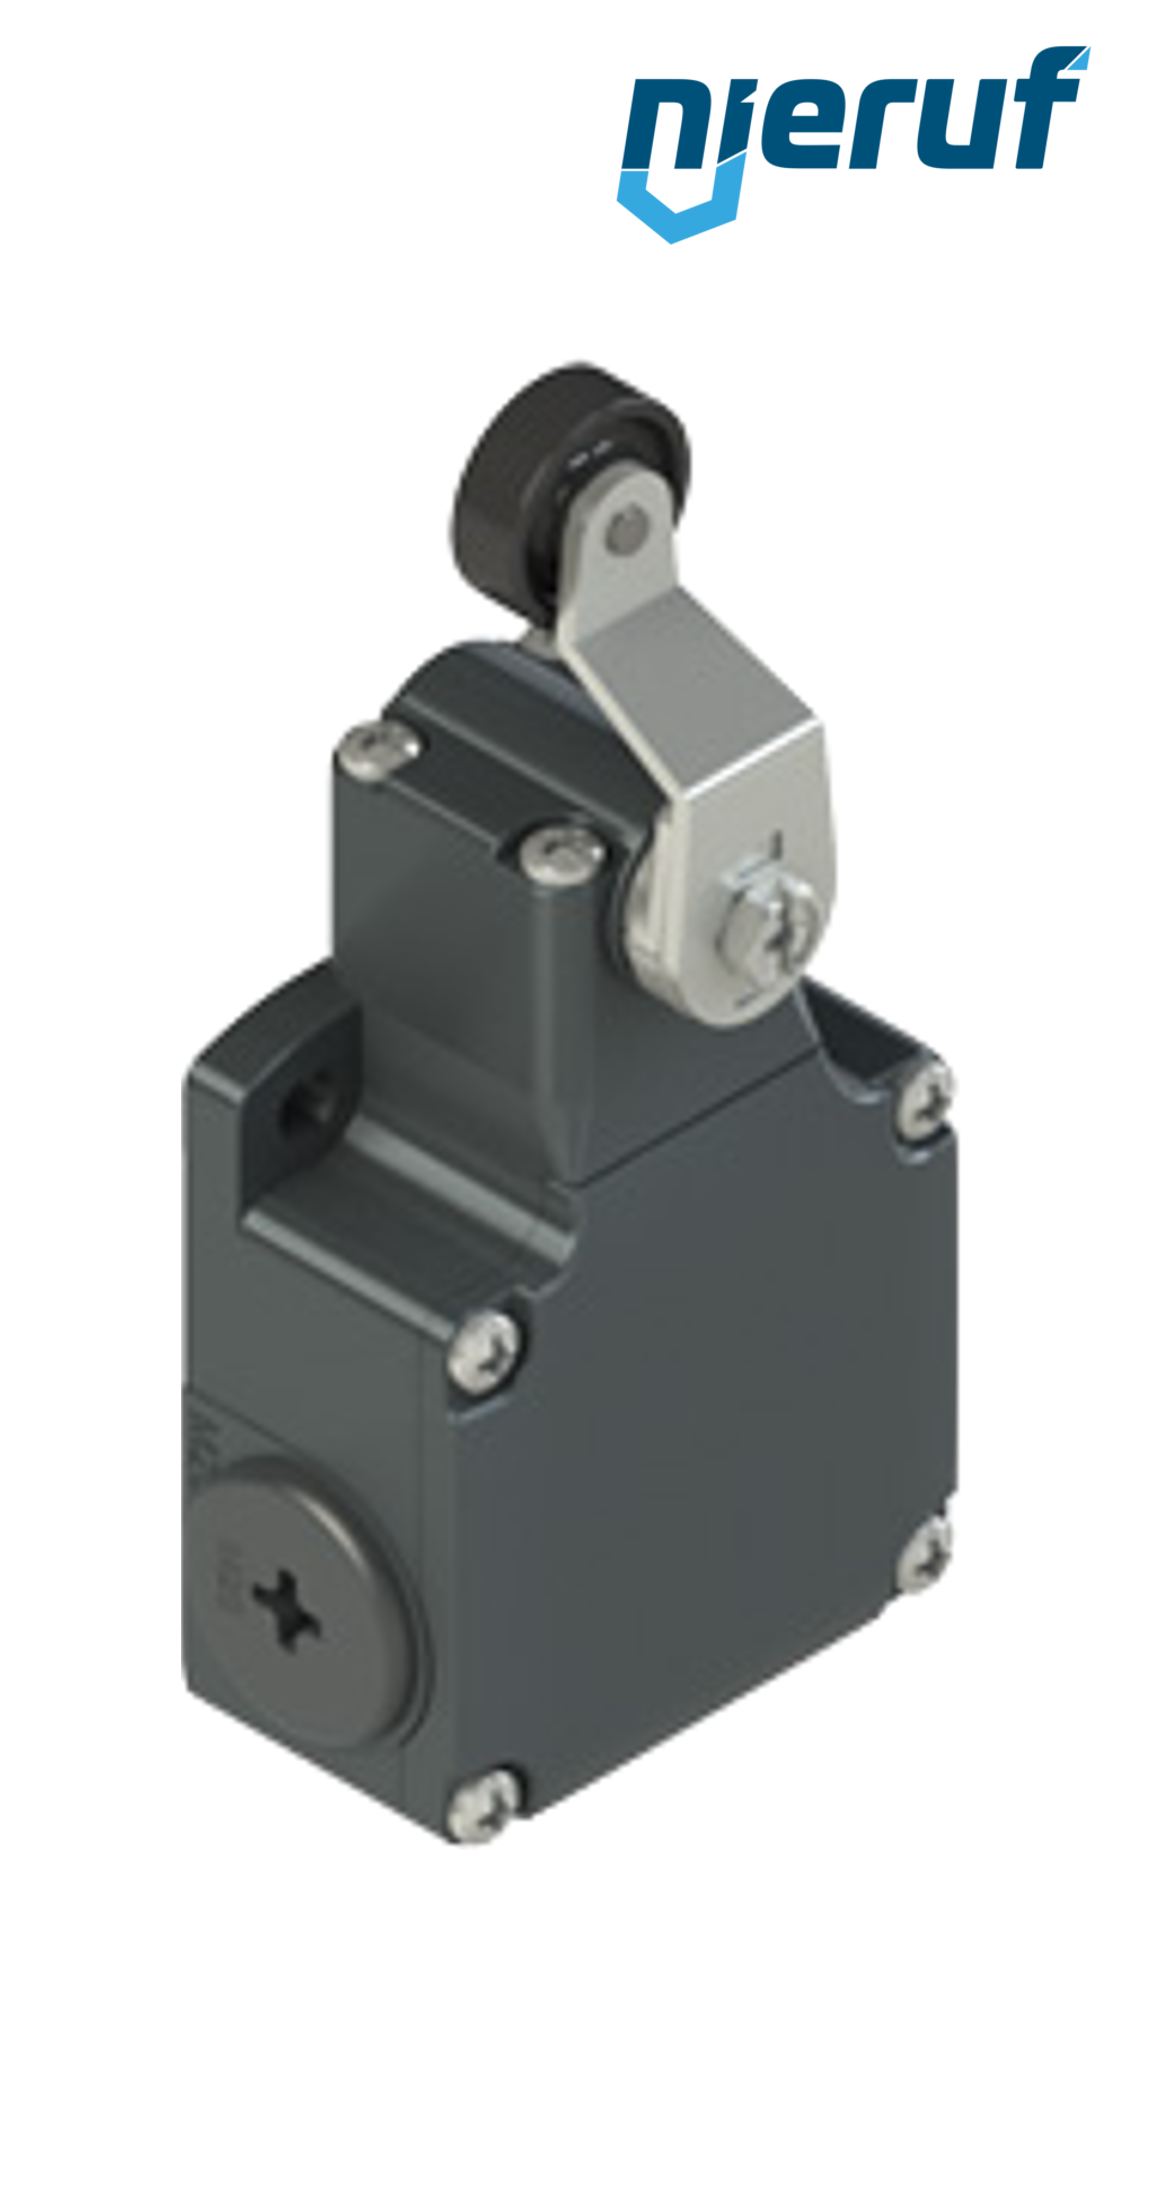 Positionsschalter FL551 PR04 für pneumatische Stoffschieber Typ SR Nennweite DN200 bis DN300